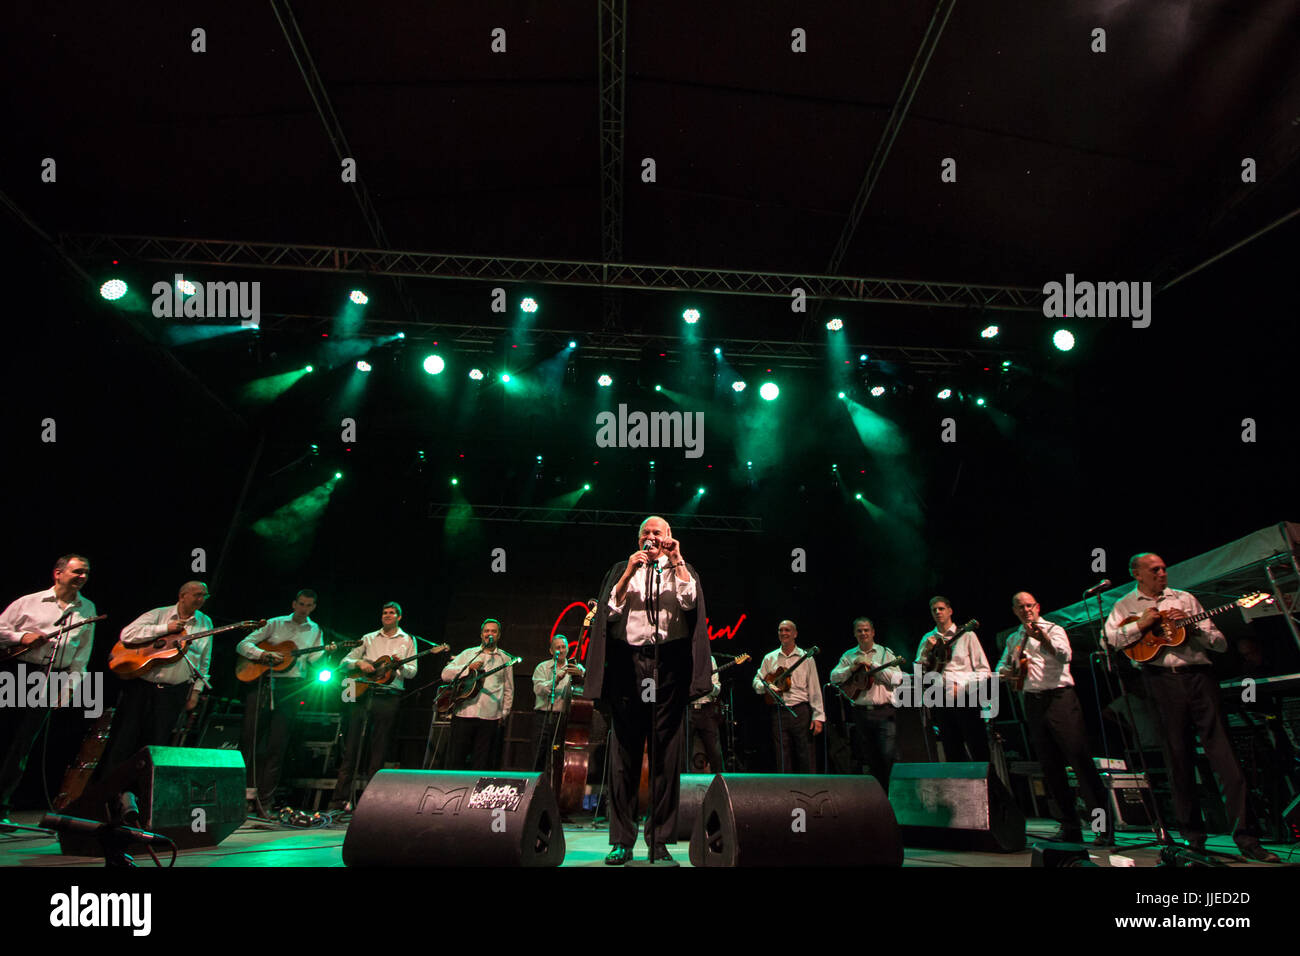 NOVI SAD, Serbien - 7. Juli 2017: Zvonko Bogdan und seiner Band auf der Bühne während der 2017 Ausgabe von Exit Festival durchführen. Zvonko Bogdan ist ein Serbisch Stockfoto